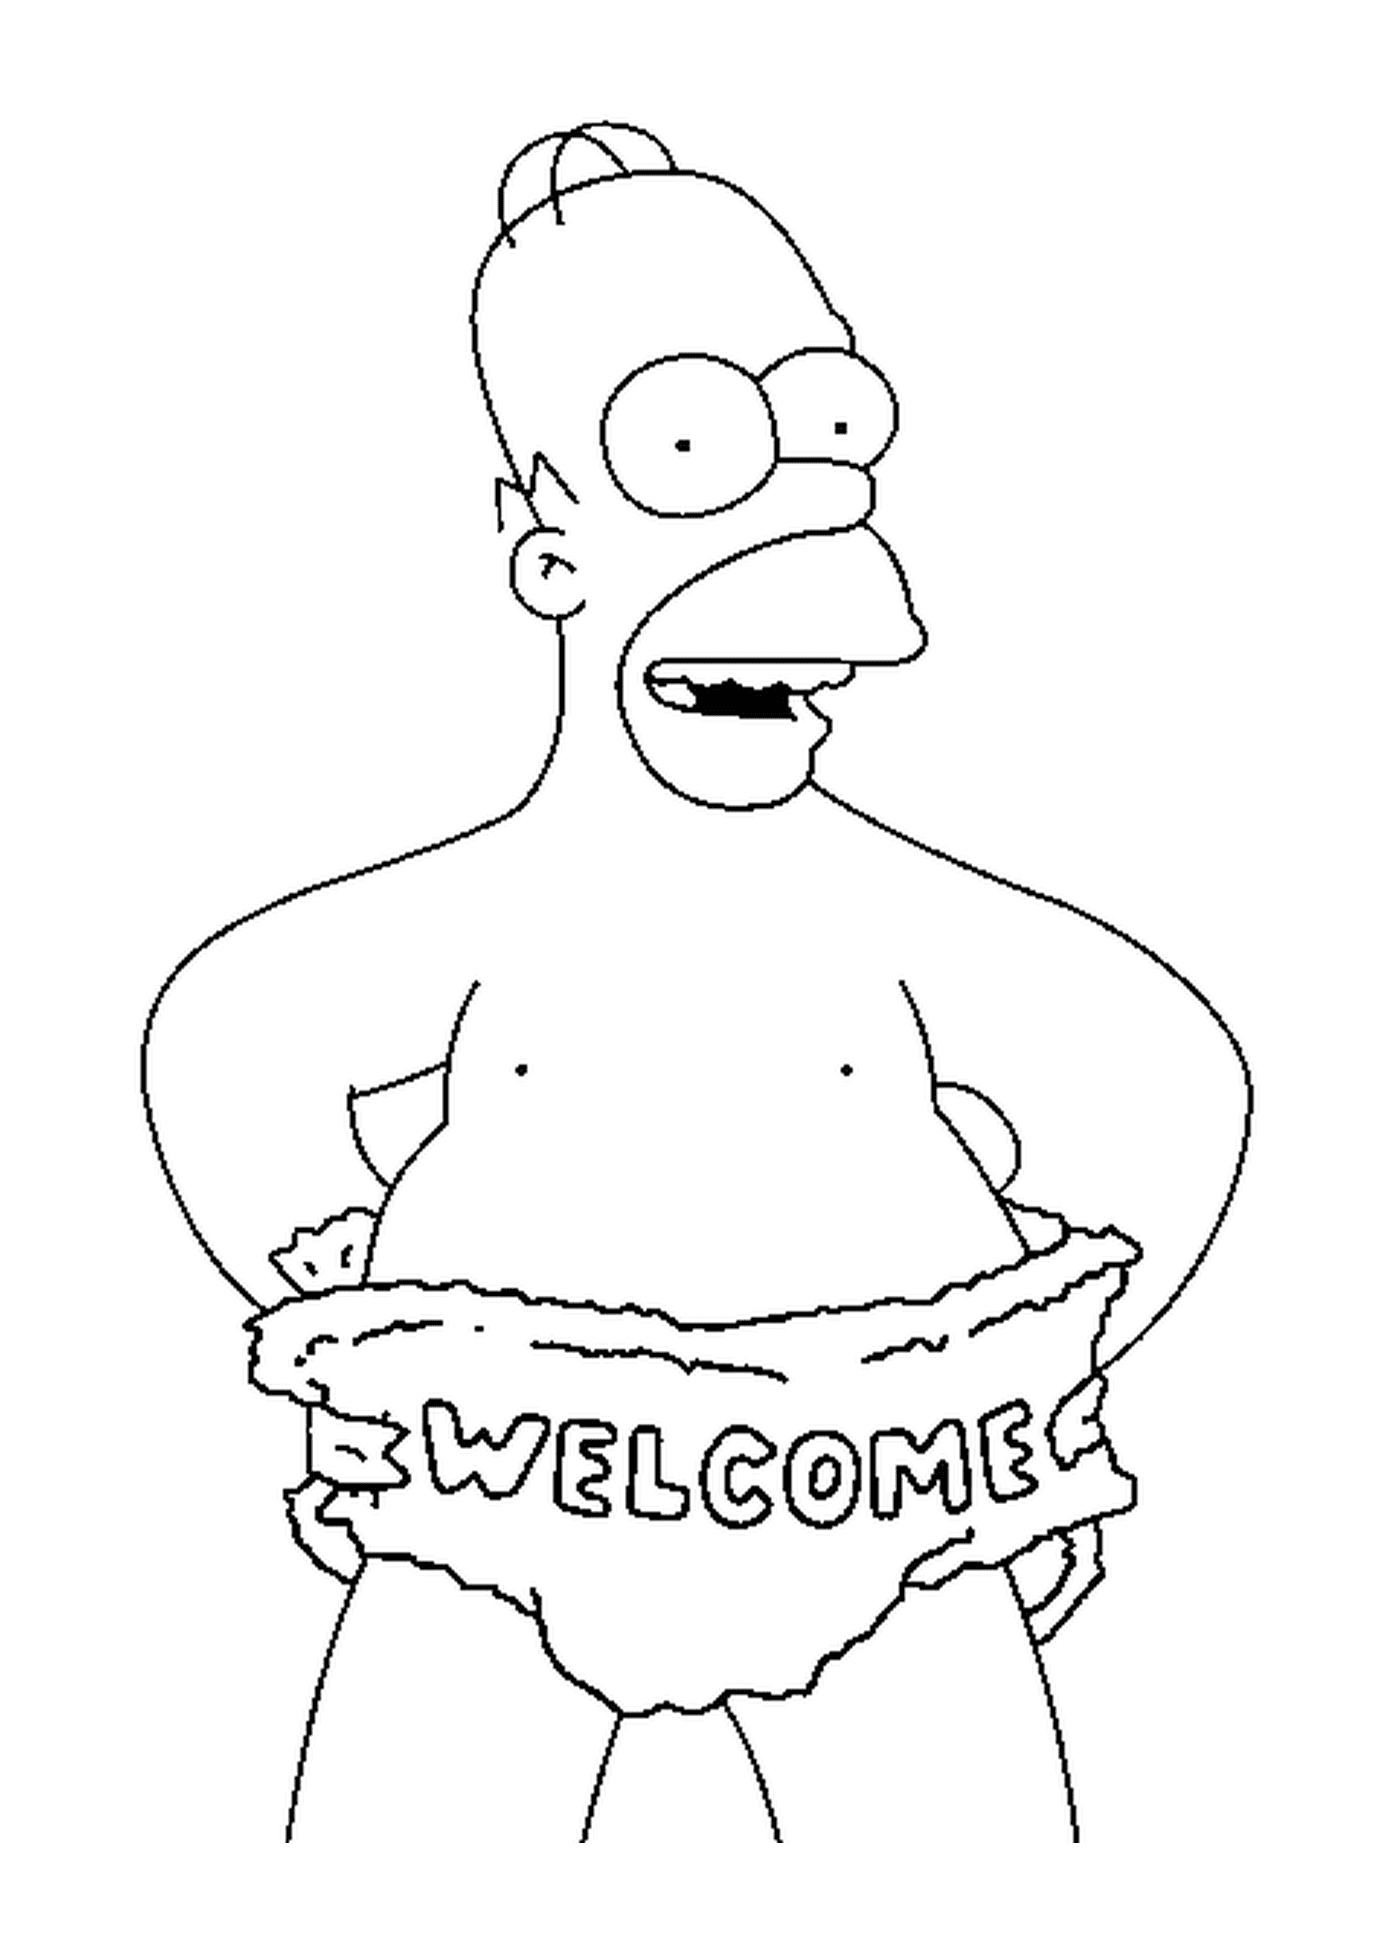  Homero Simpson, una cálida bienvenida 